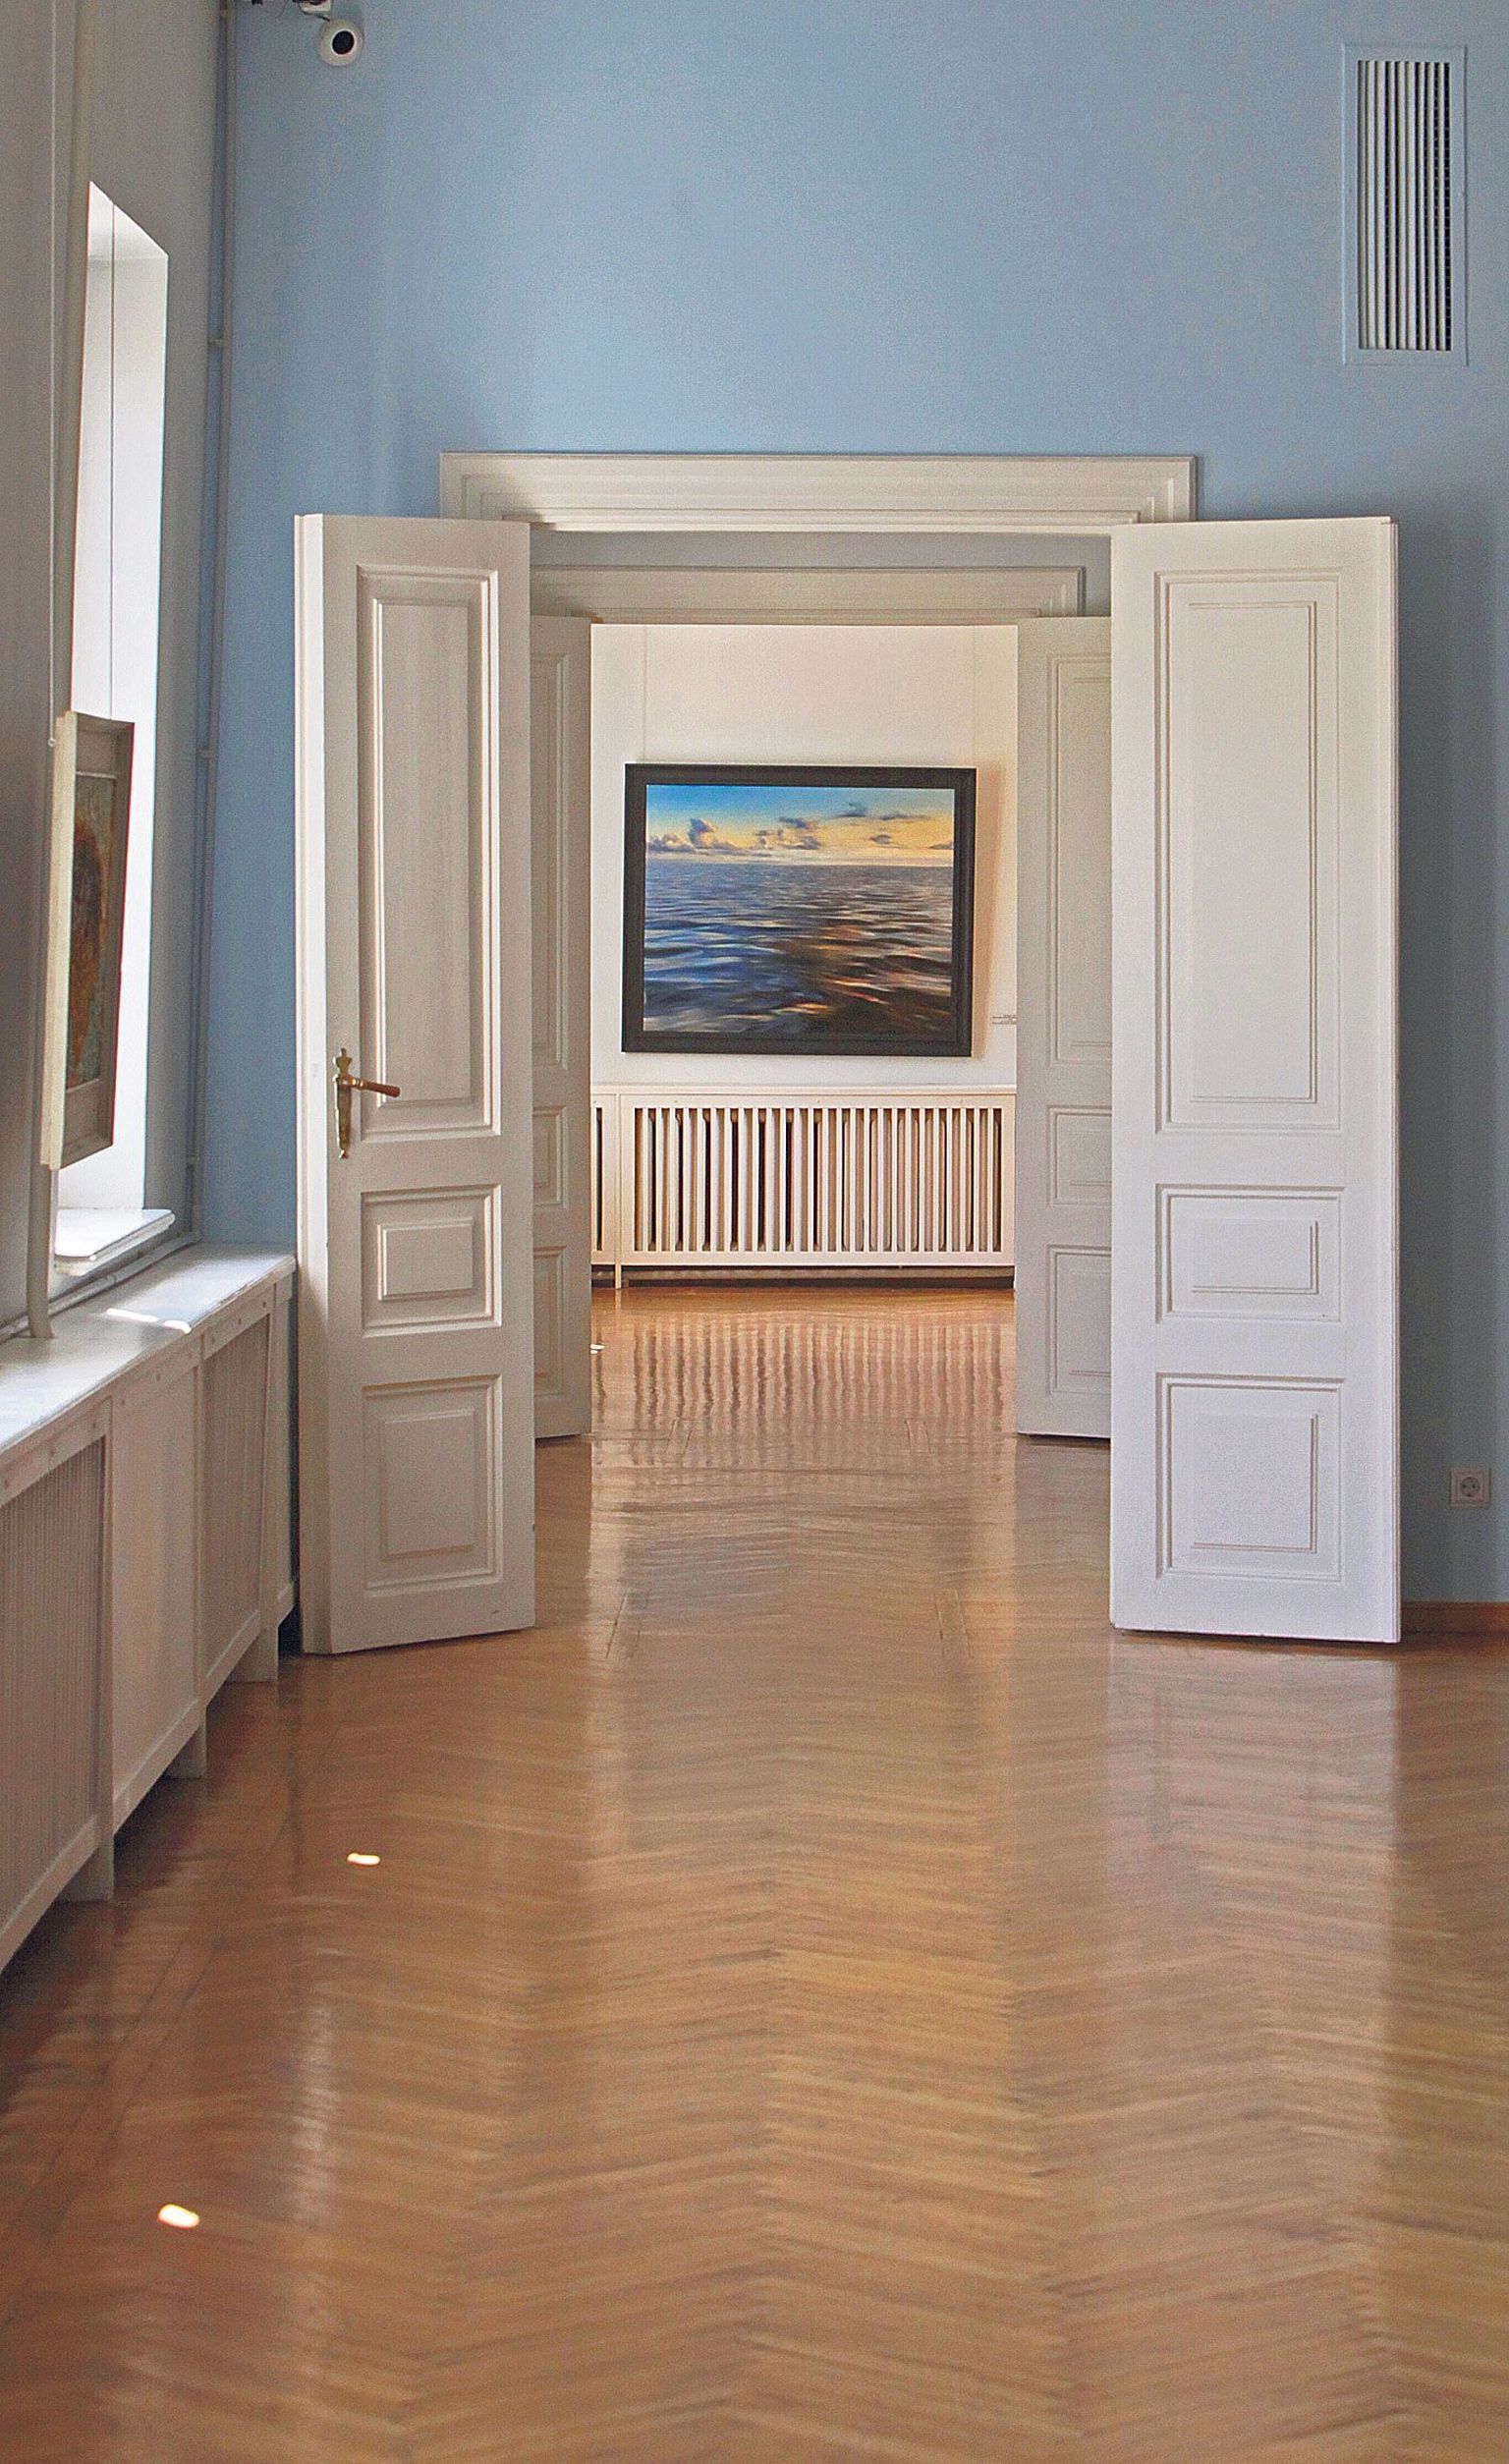 Läbi kunstimuuseumi kahe saali paistab «Meri tumeda taeva all», mille Aili Vint maalis aastal 1975.